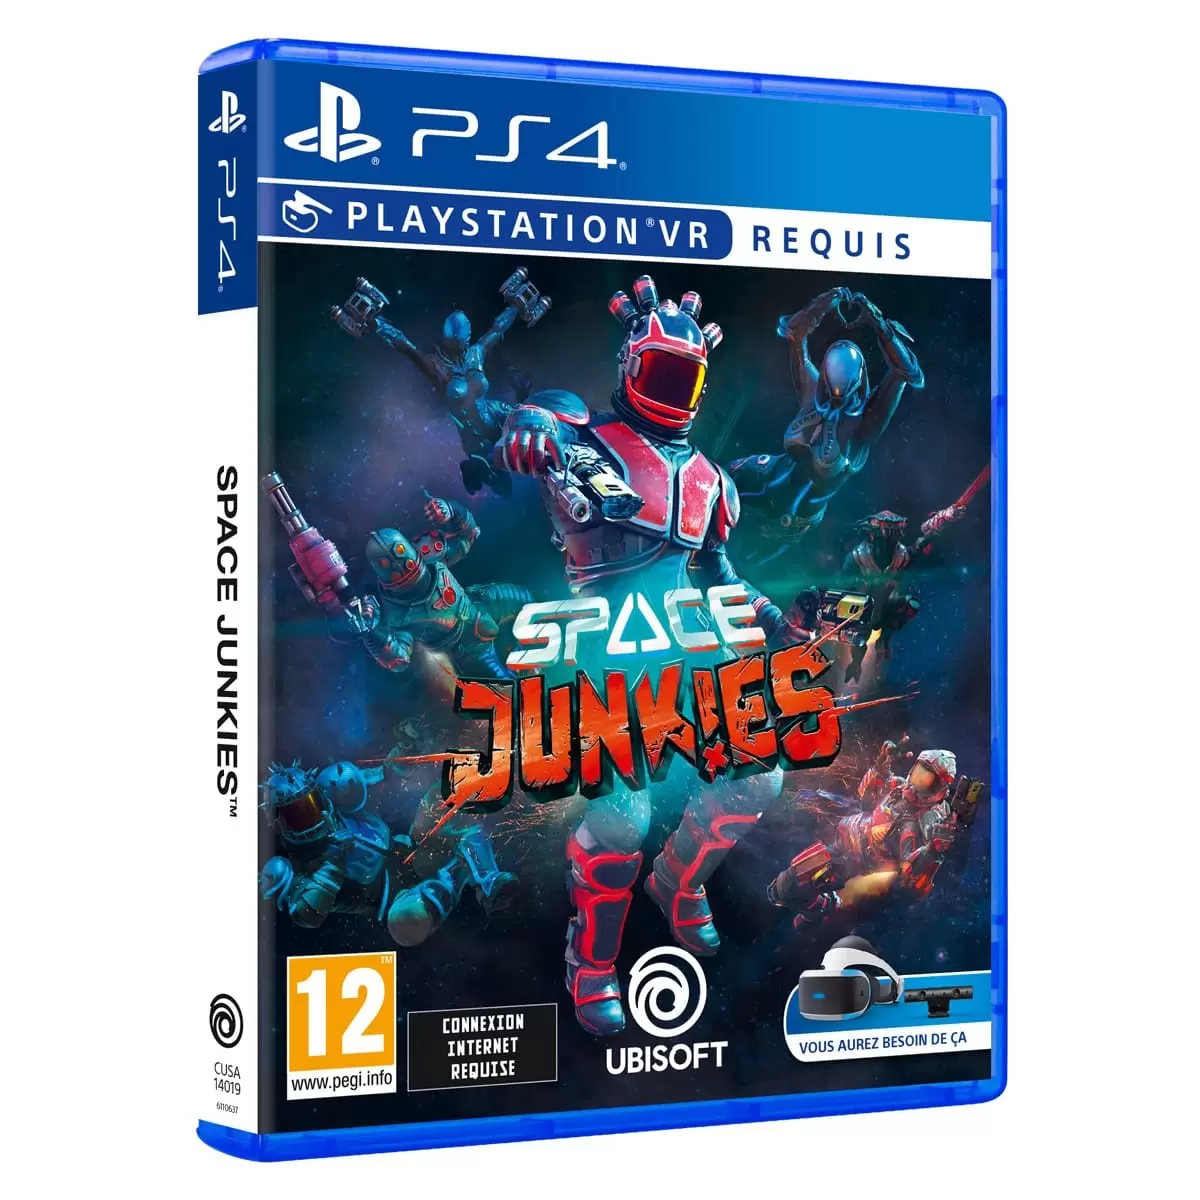 PS4 Games - Space Junkies